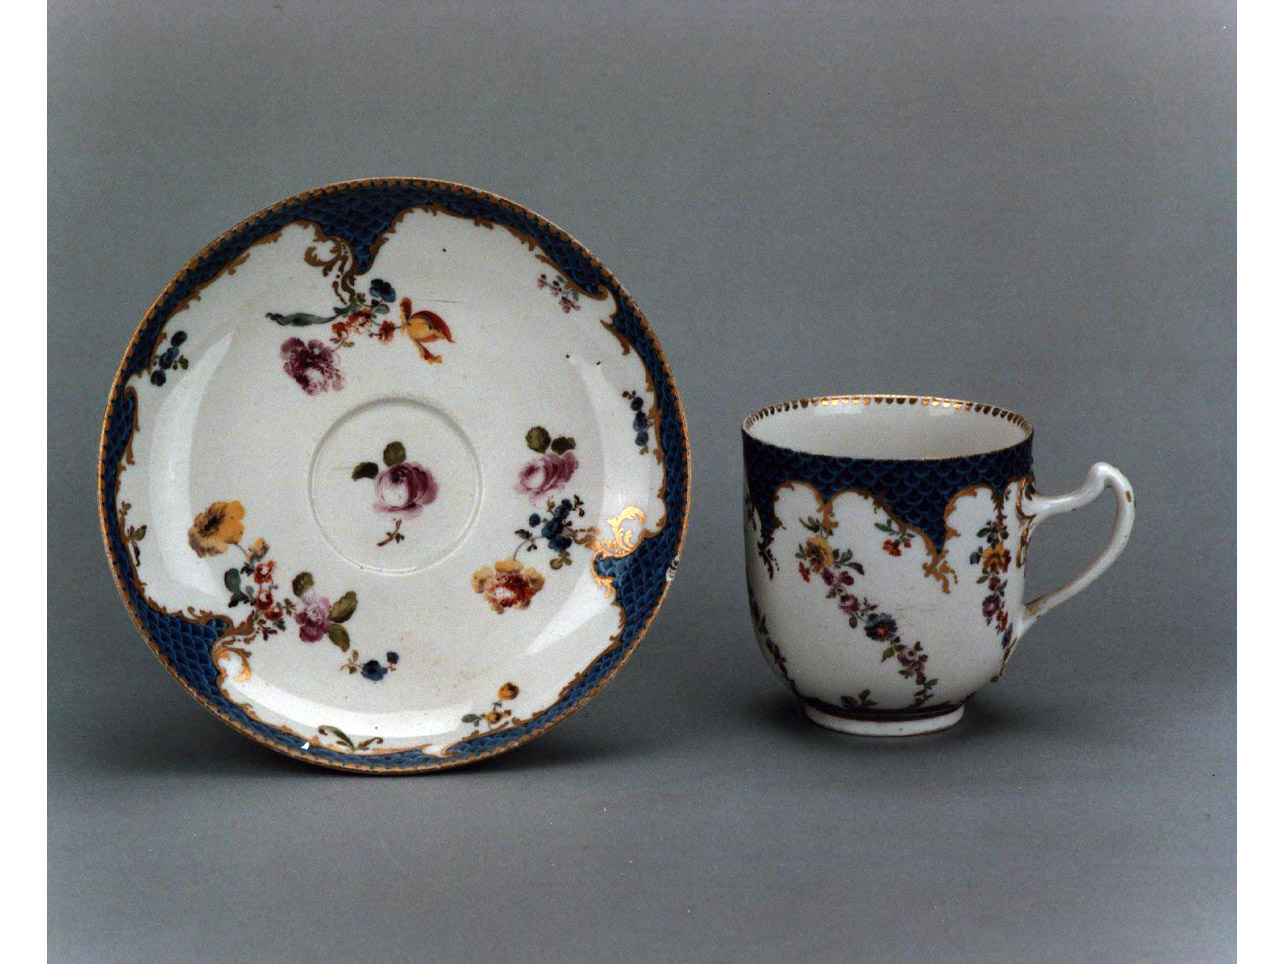 motivi decorativi floreali (tazza, elemento d'insieme) - manifattura di Meissen (sec. XVIII)